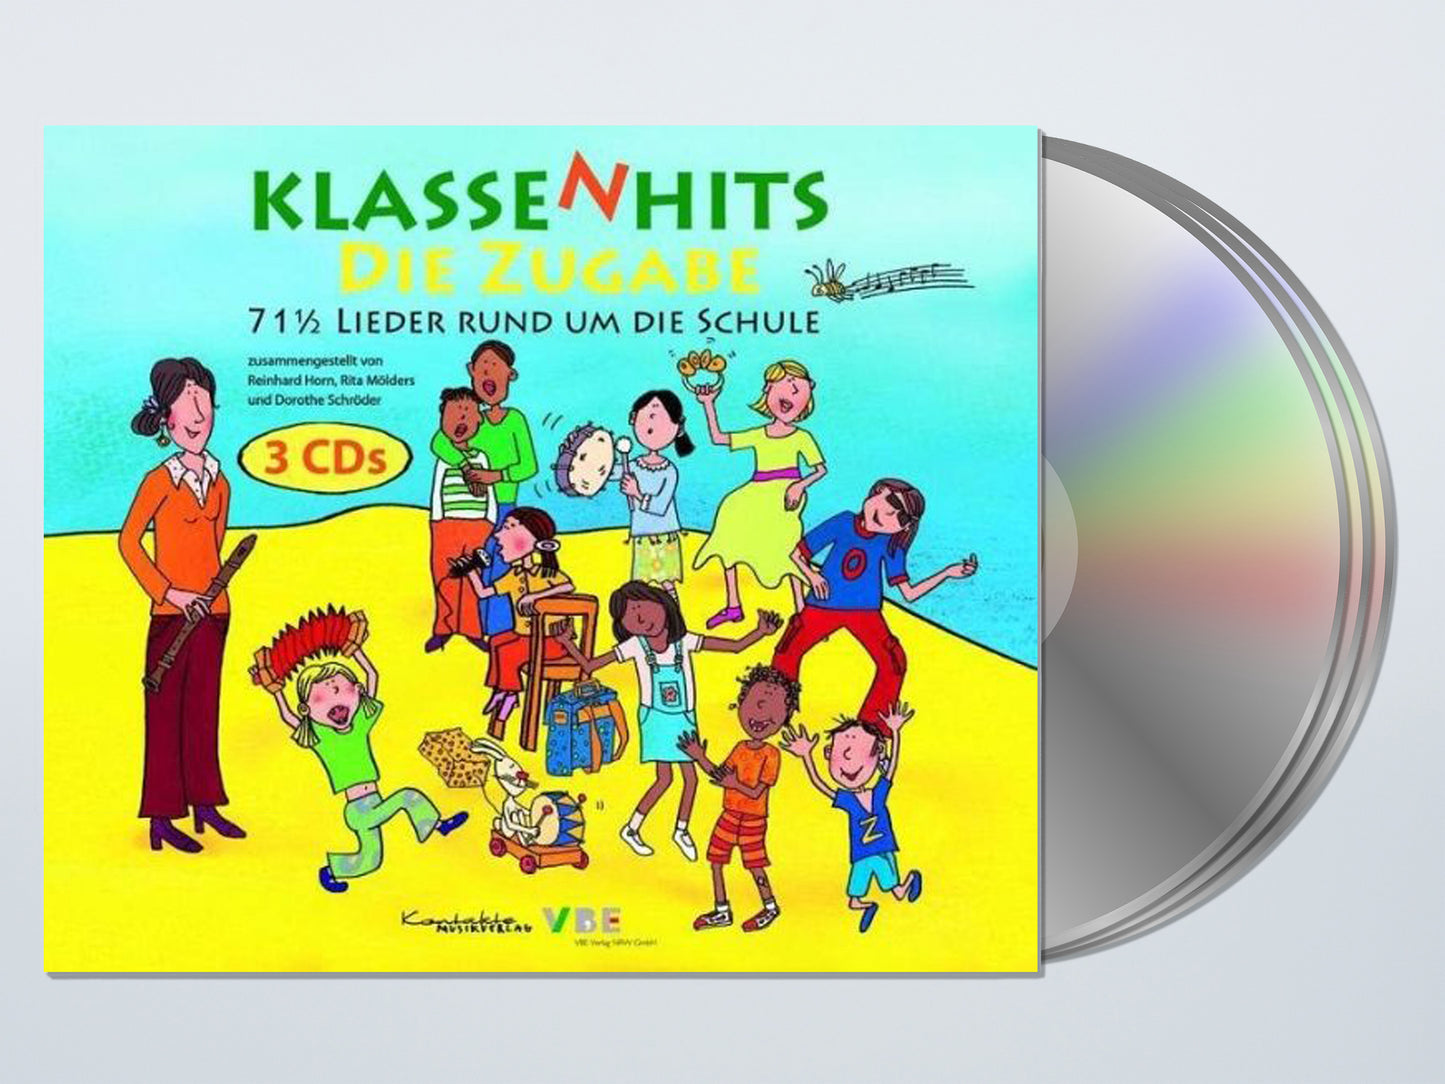 KlassenHits - die Zugabe (CD-Paket)